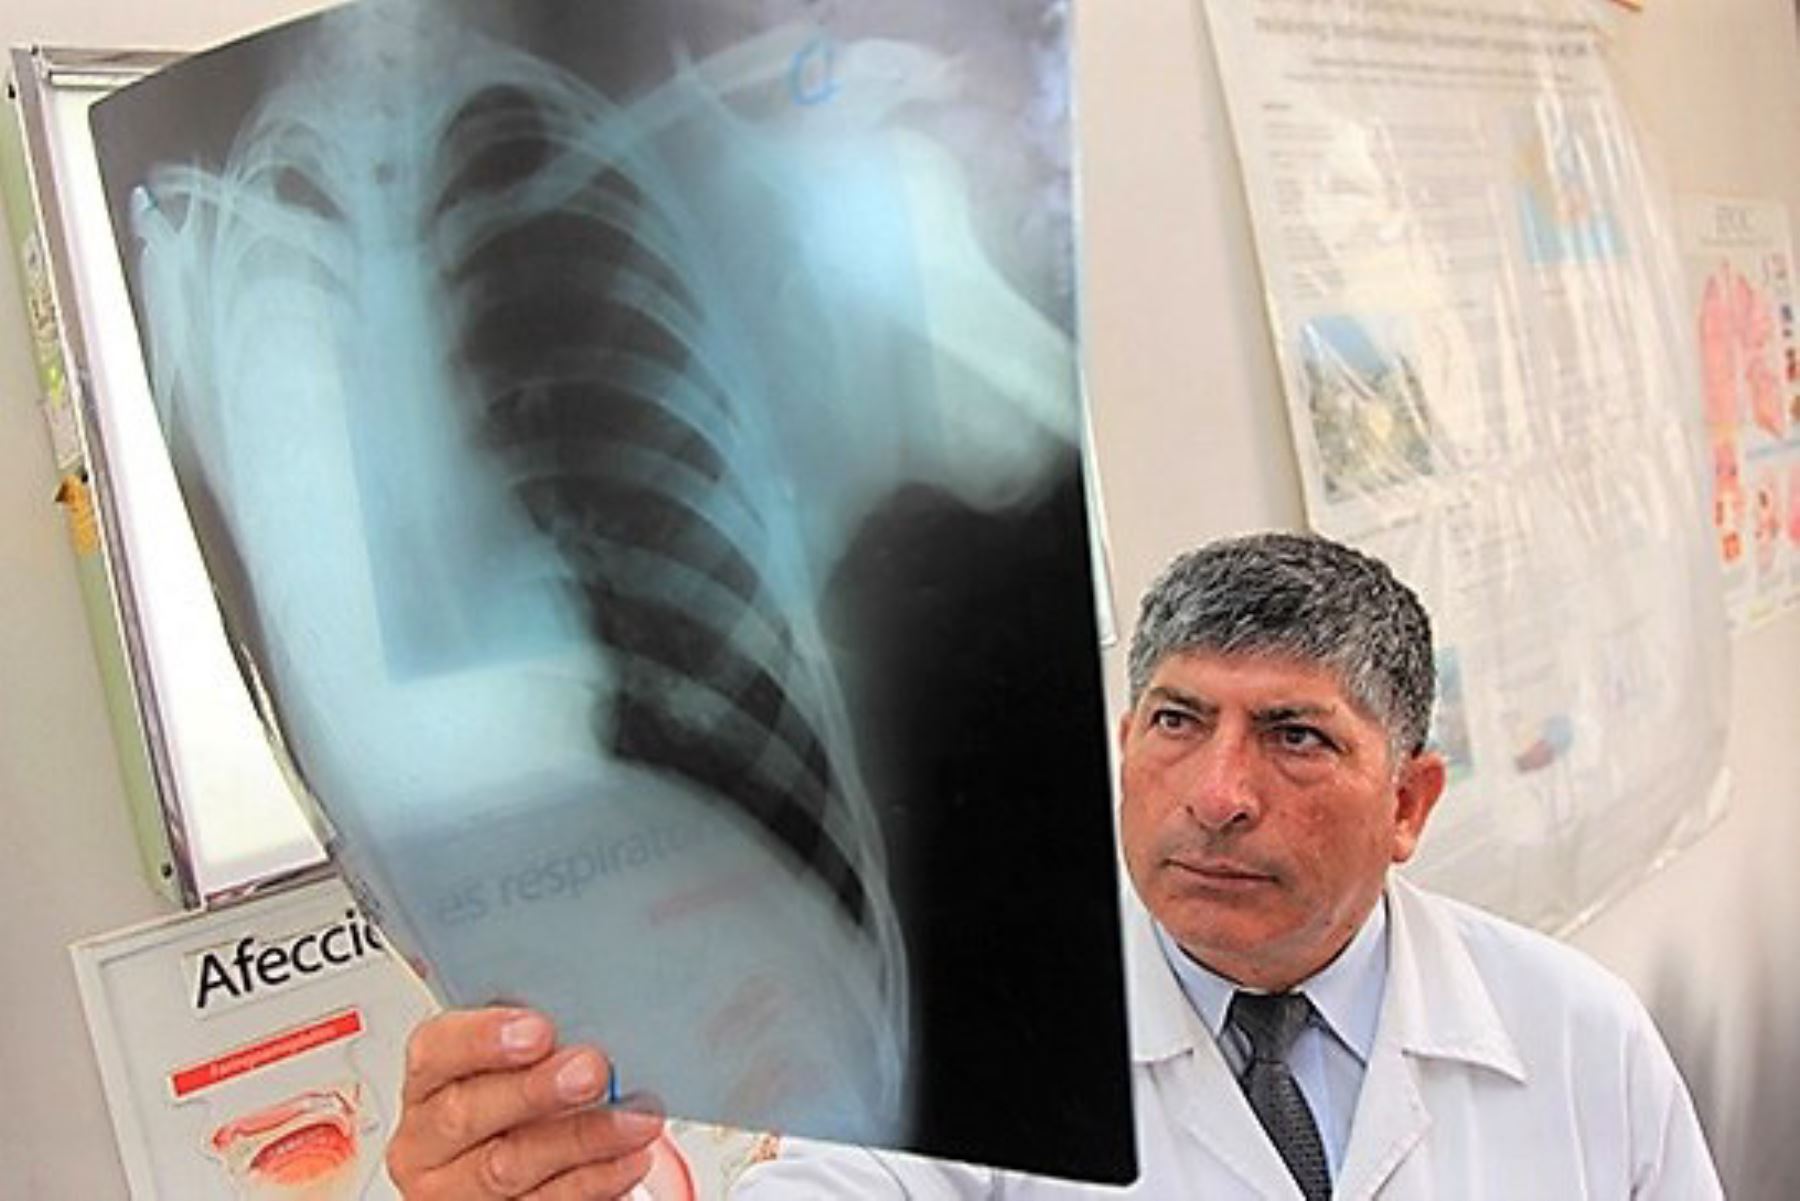 Fibrosis pulmonar idiopática es más frecuente en adultos a partir de los 50 años